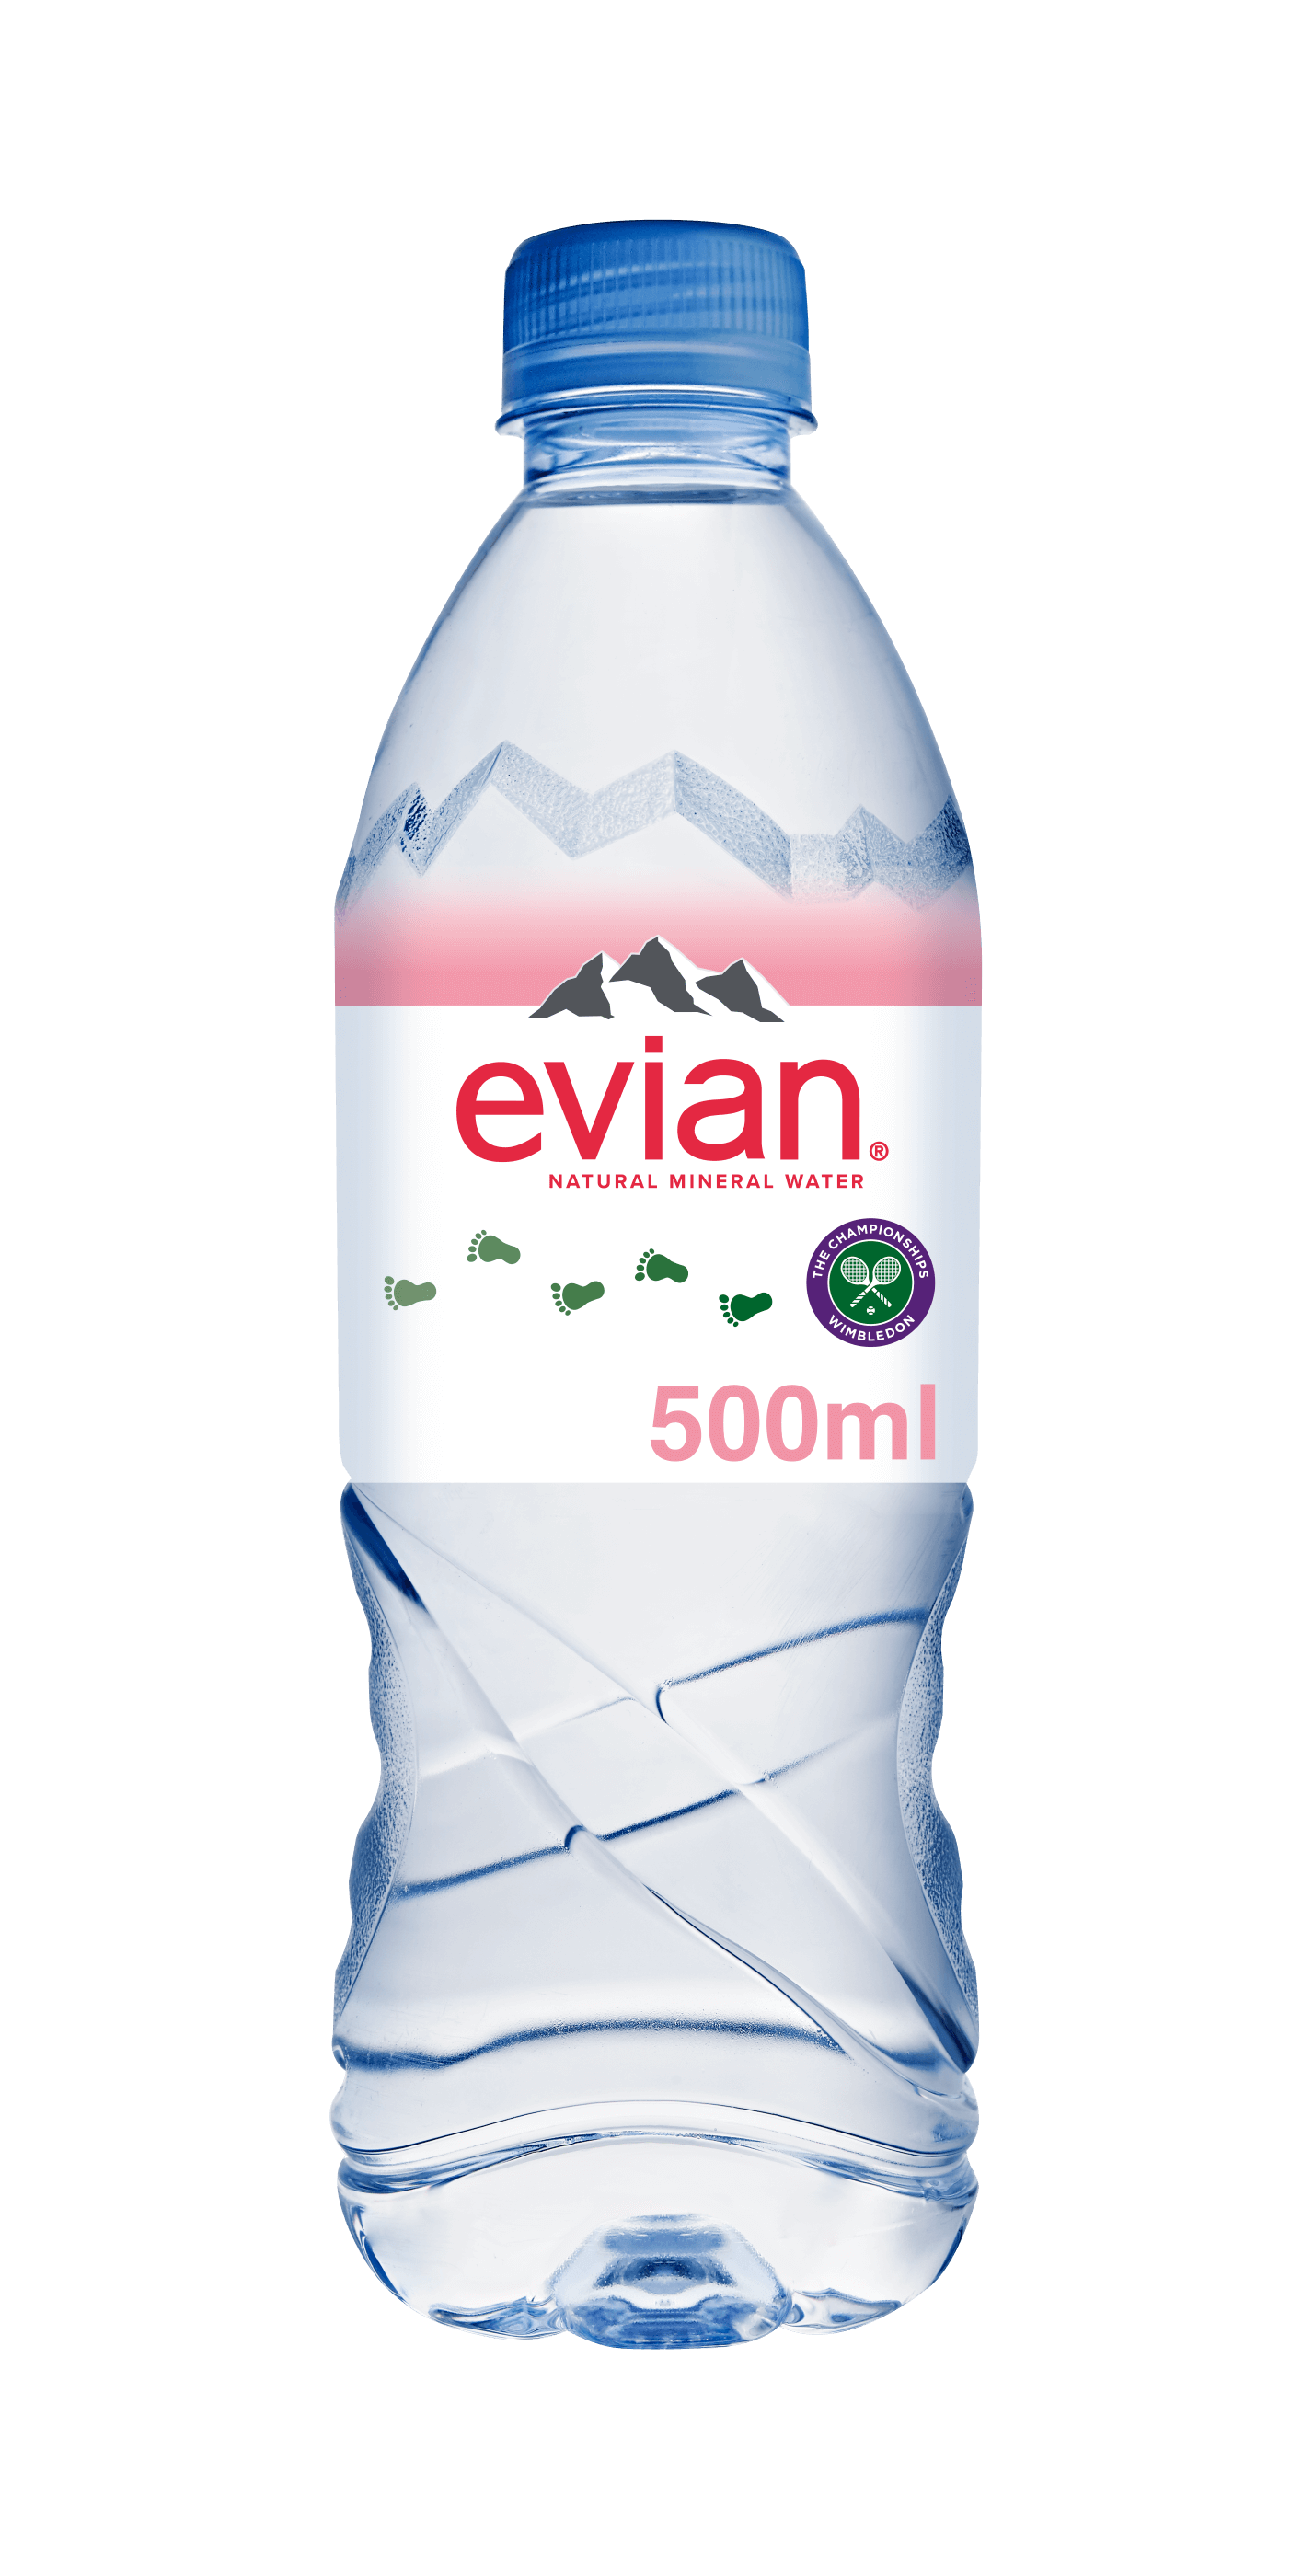 evian 500ml Water Bottles | evian 50cl | evian® - evian ...